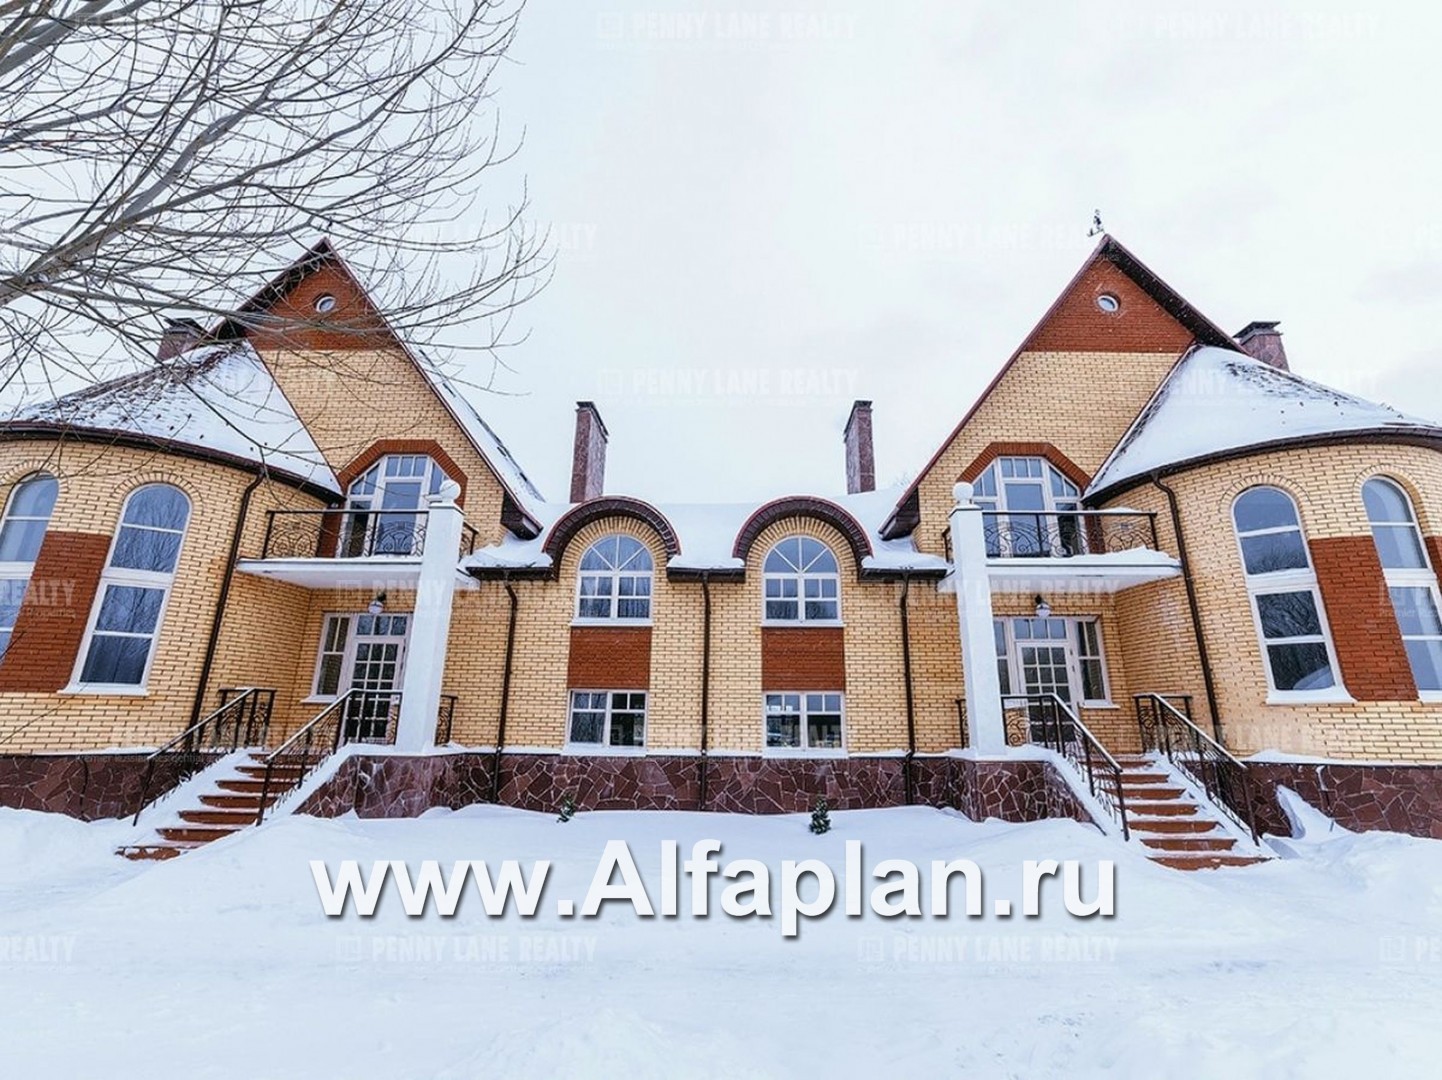 Проекты домов Альфаплан - «Онегин» - дуплекс (дом на две семьи) в стиле замка - дополнительное изображение №1